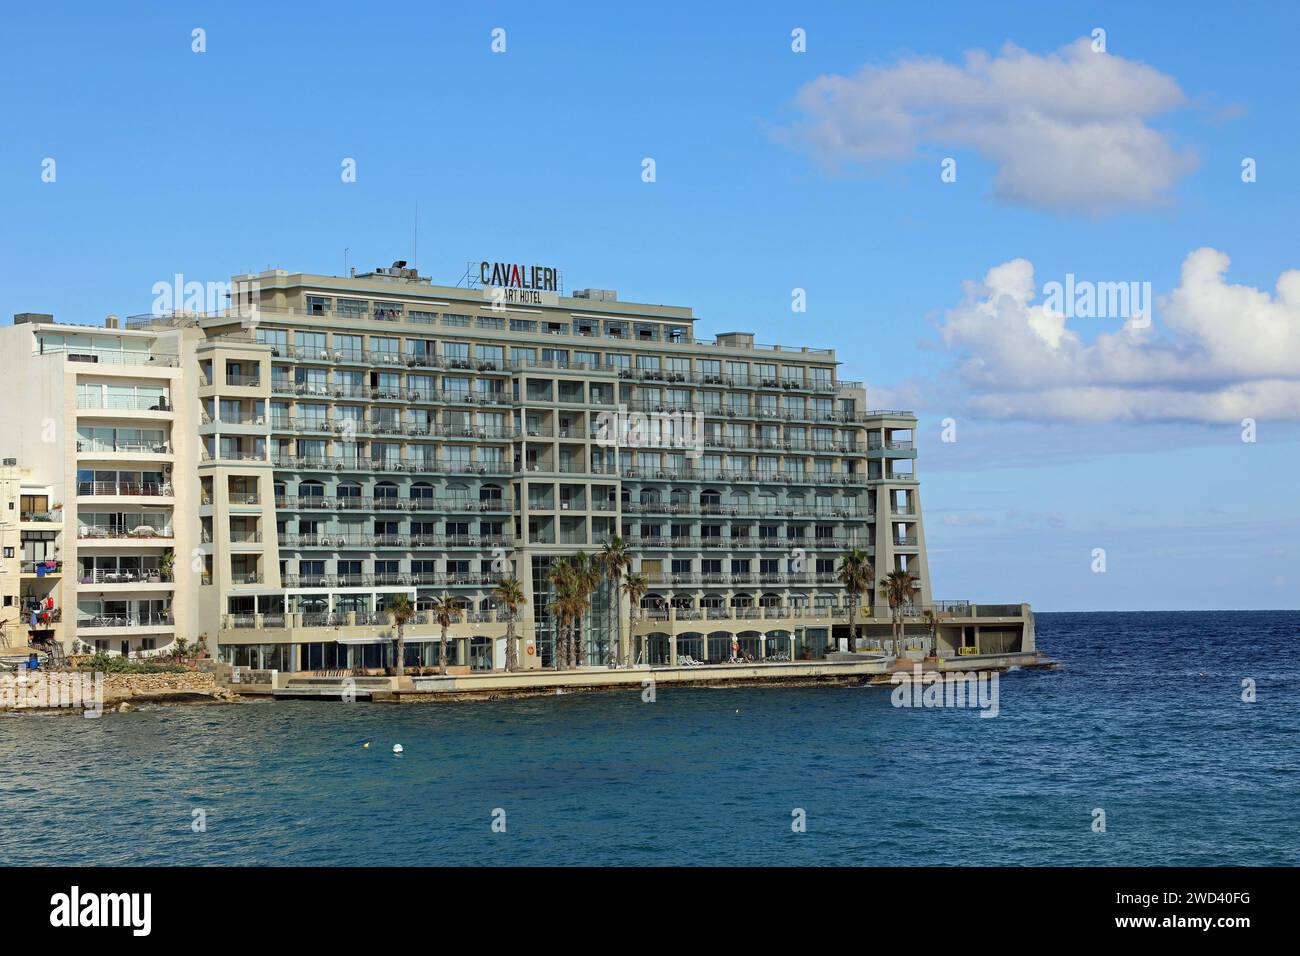 Cavalieri Art Hotel at Saint Julians Bay in Malta Stock Photo